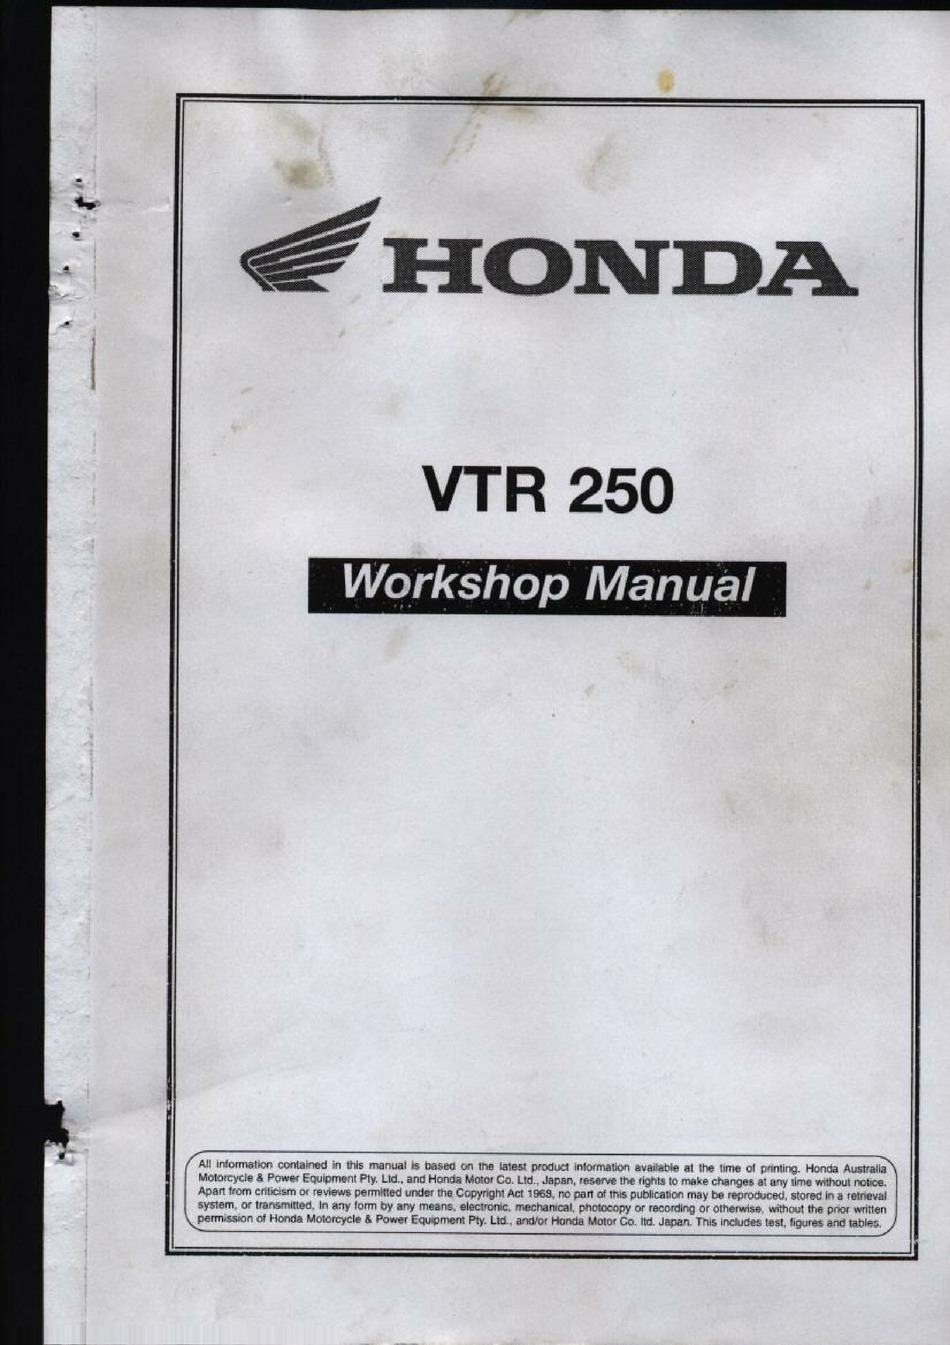 HONDA VTR 250 WORKSHOP MANUAL Pdf Download | ManualsLib